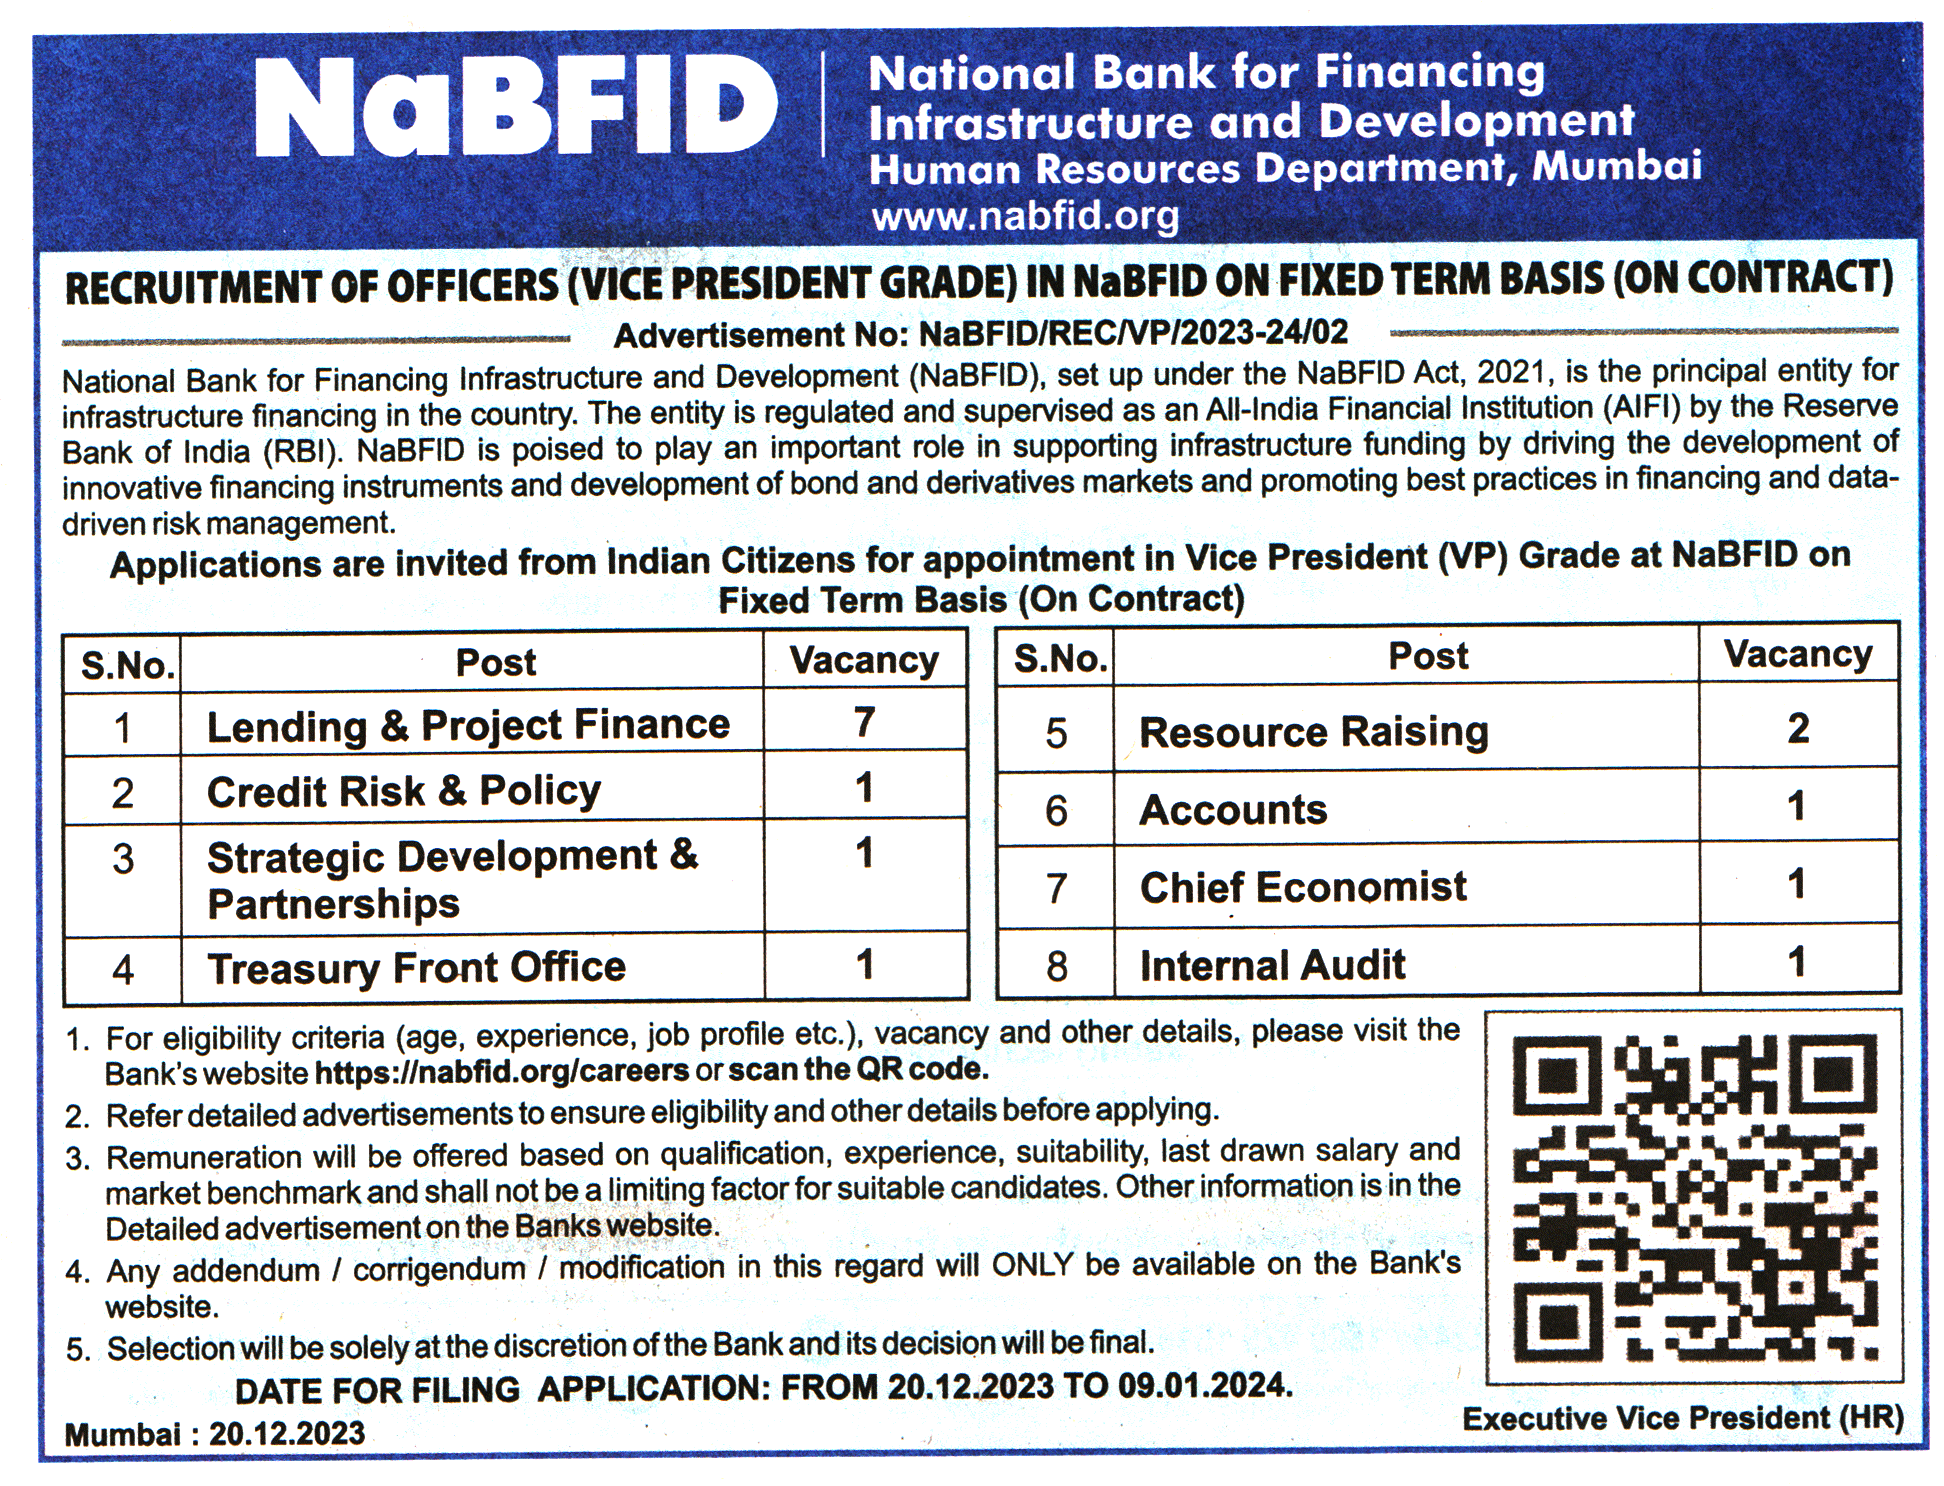 NaBFID Mumbai Recruitment